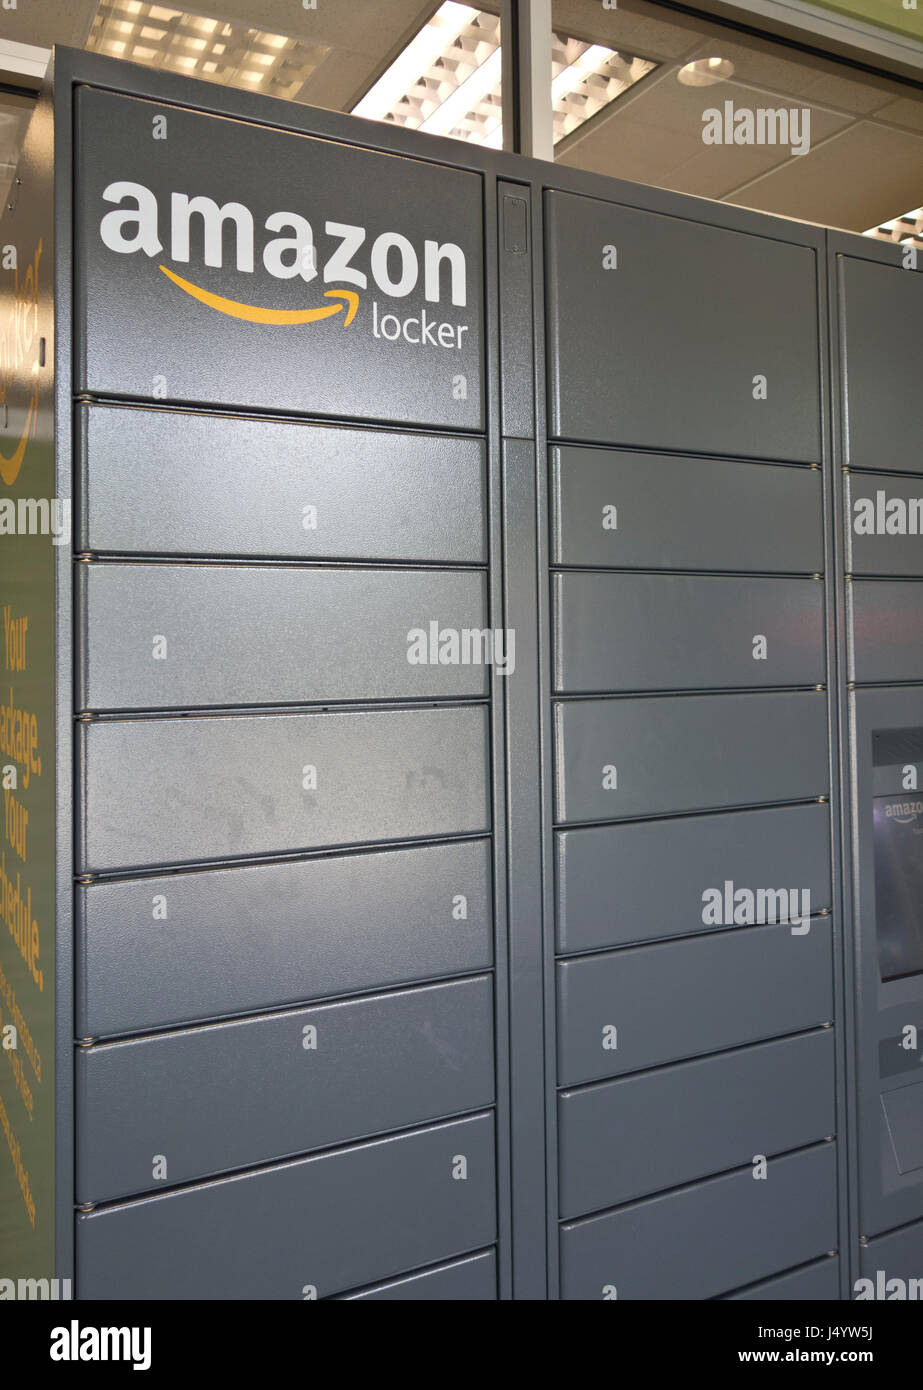 Amazon locker, utilizado para recoger los paquetes ordenados de Amazon.ca.  Situado en el vestíbulo de un banco en el área metropolitana de Vancouver,  Canadá Fotografía de stock - Alamy